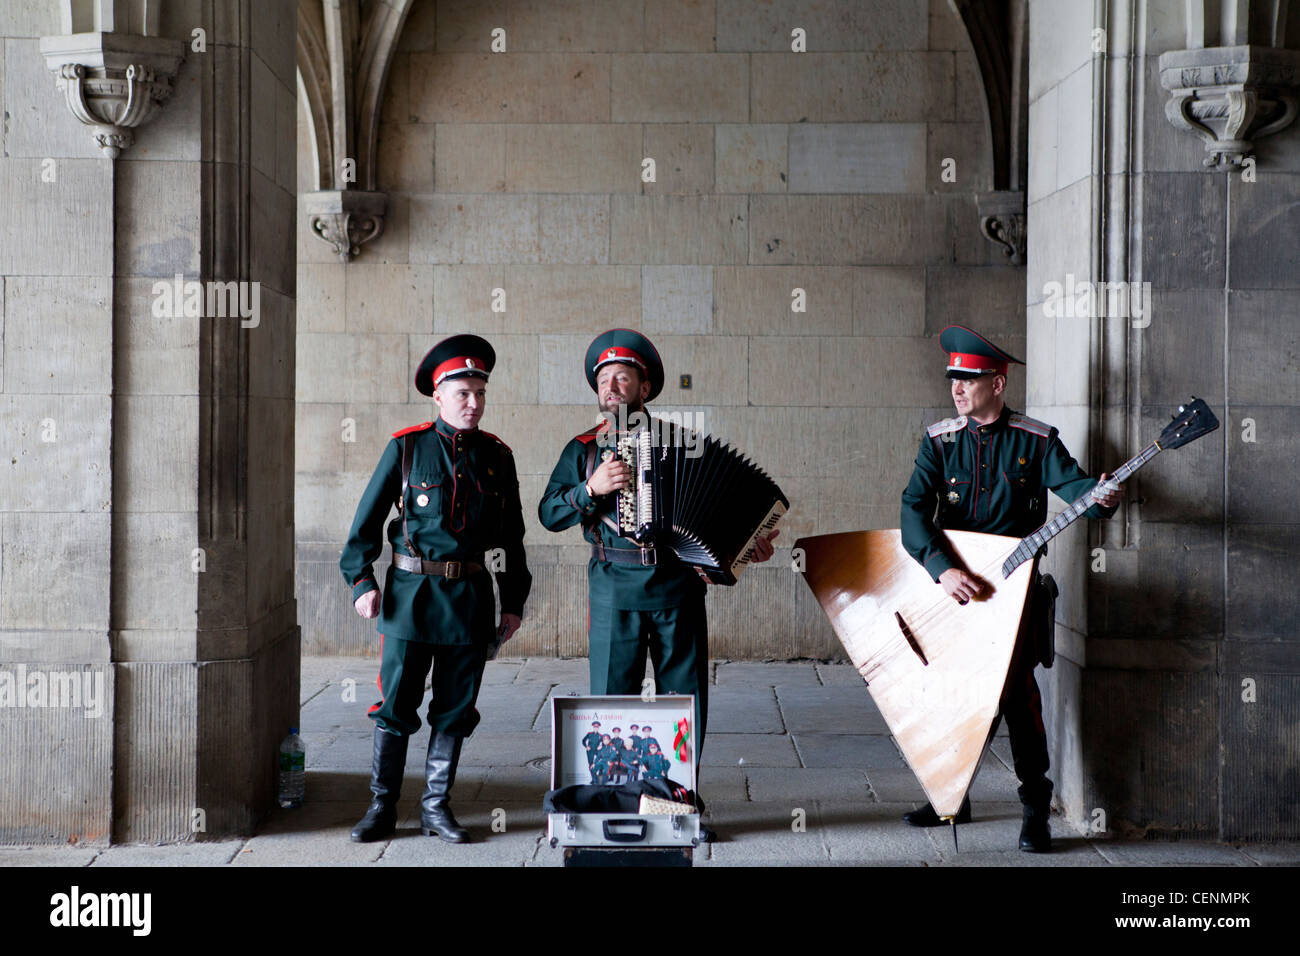 Des musiciens de rue portant des uniformes de l'Europe de l'ancienne à Dresde, Allemagne Banque D'Images